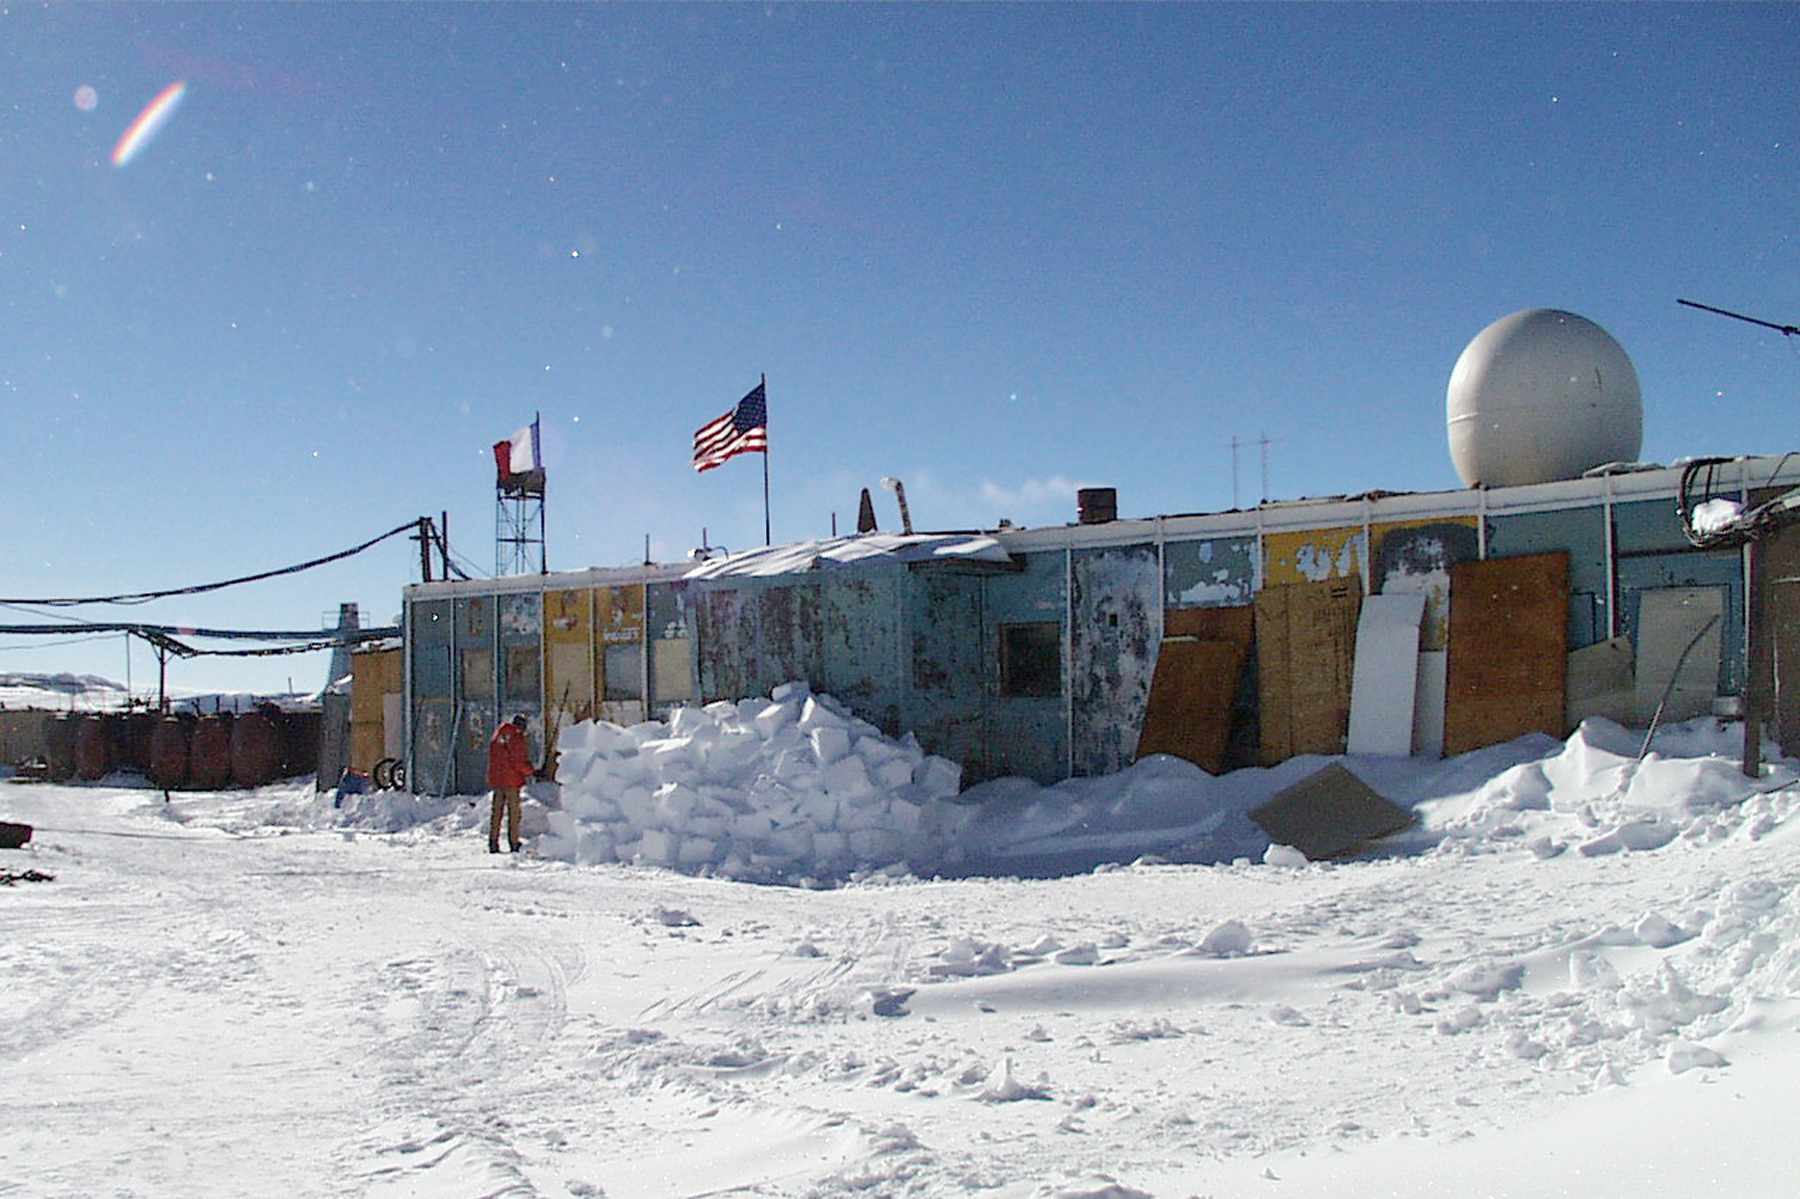 Estación Vostok, Antártida, cubierta de nieve